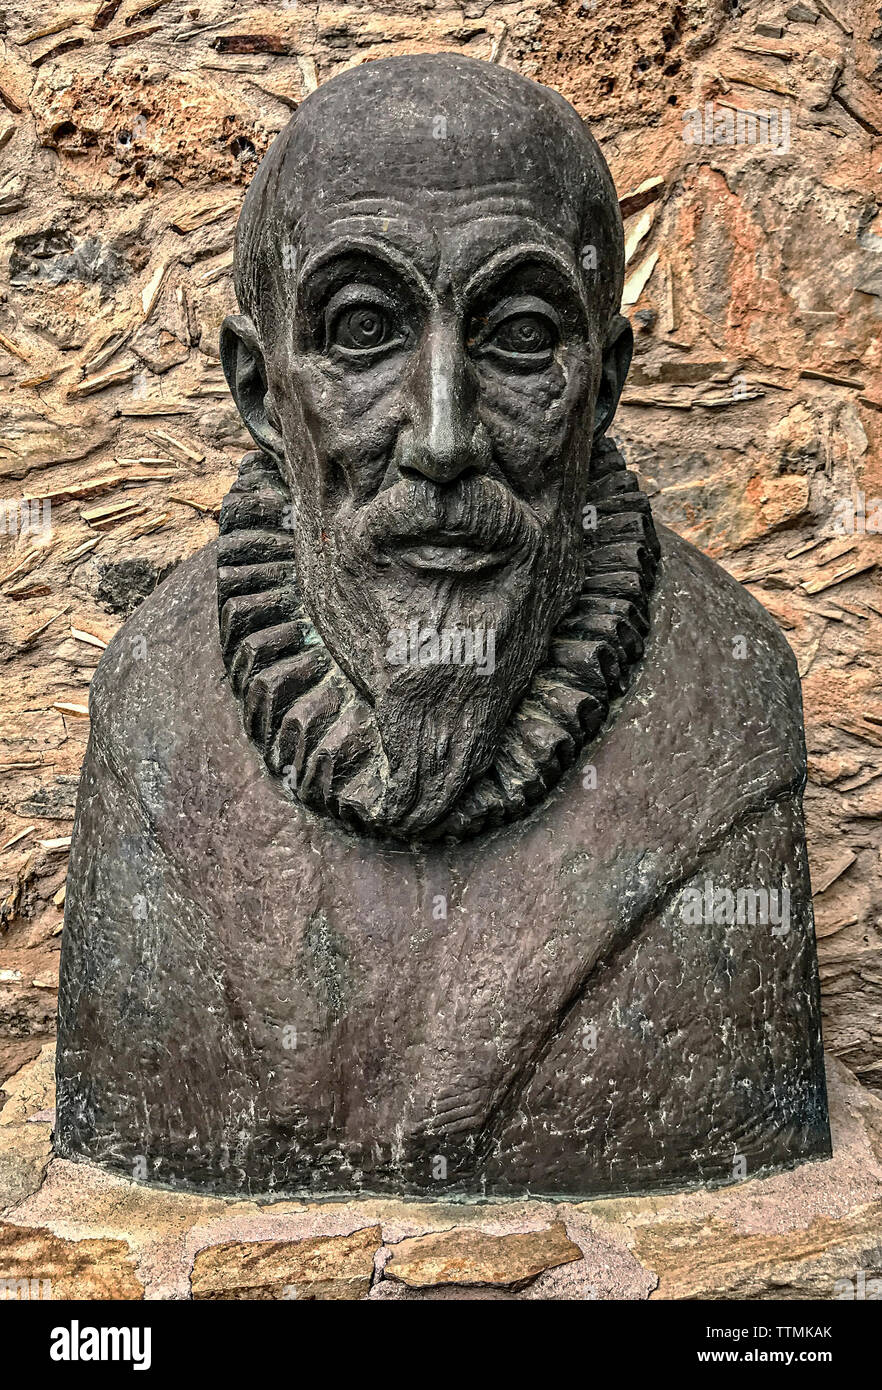 Greece Crete - Fodele El Greco museum Bust of El Greco Stock Photo